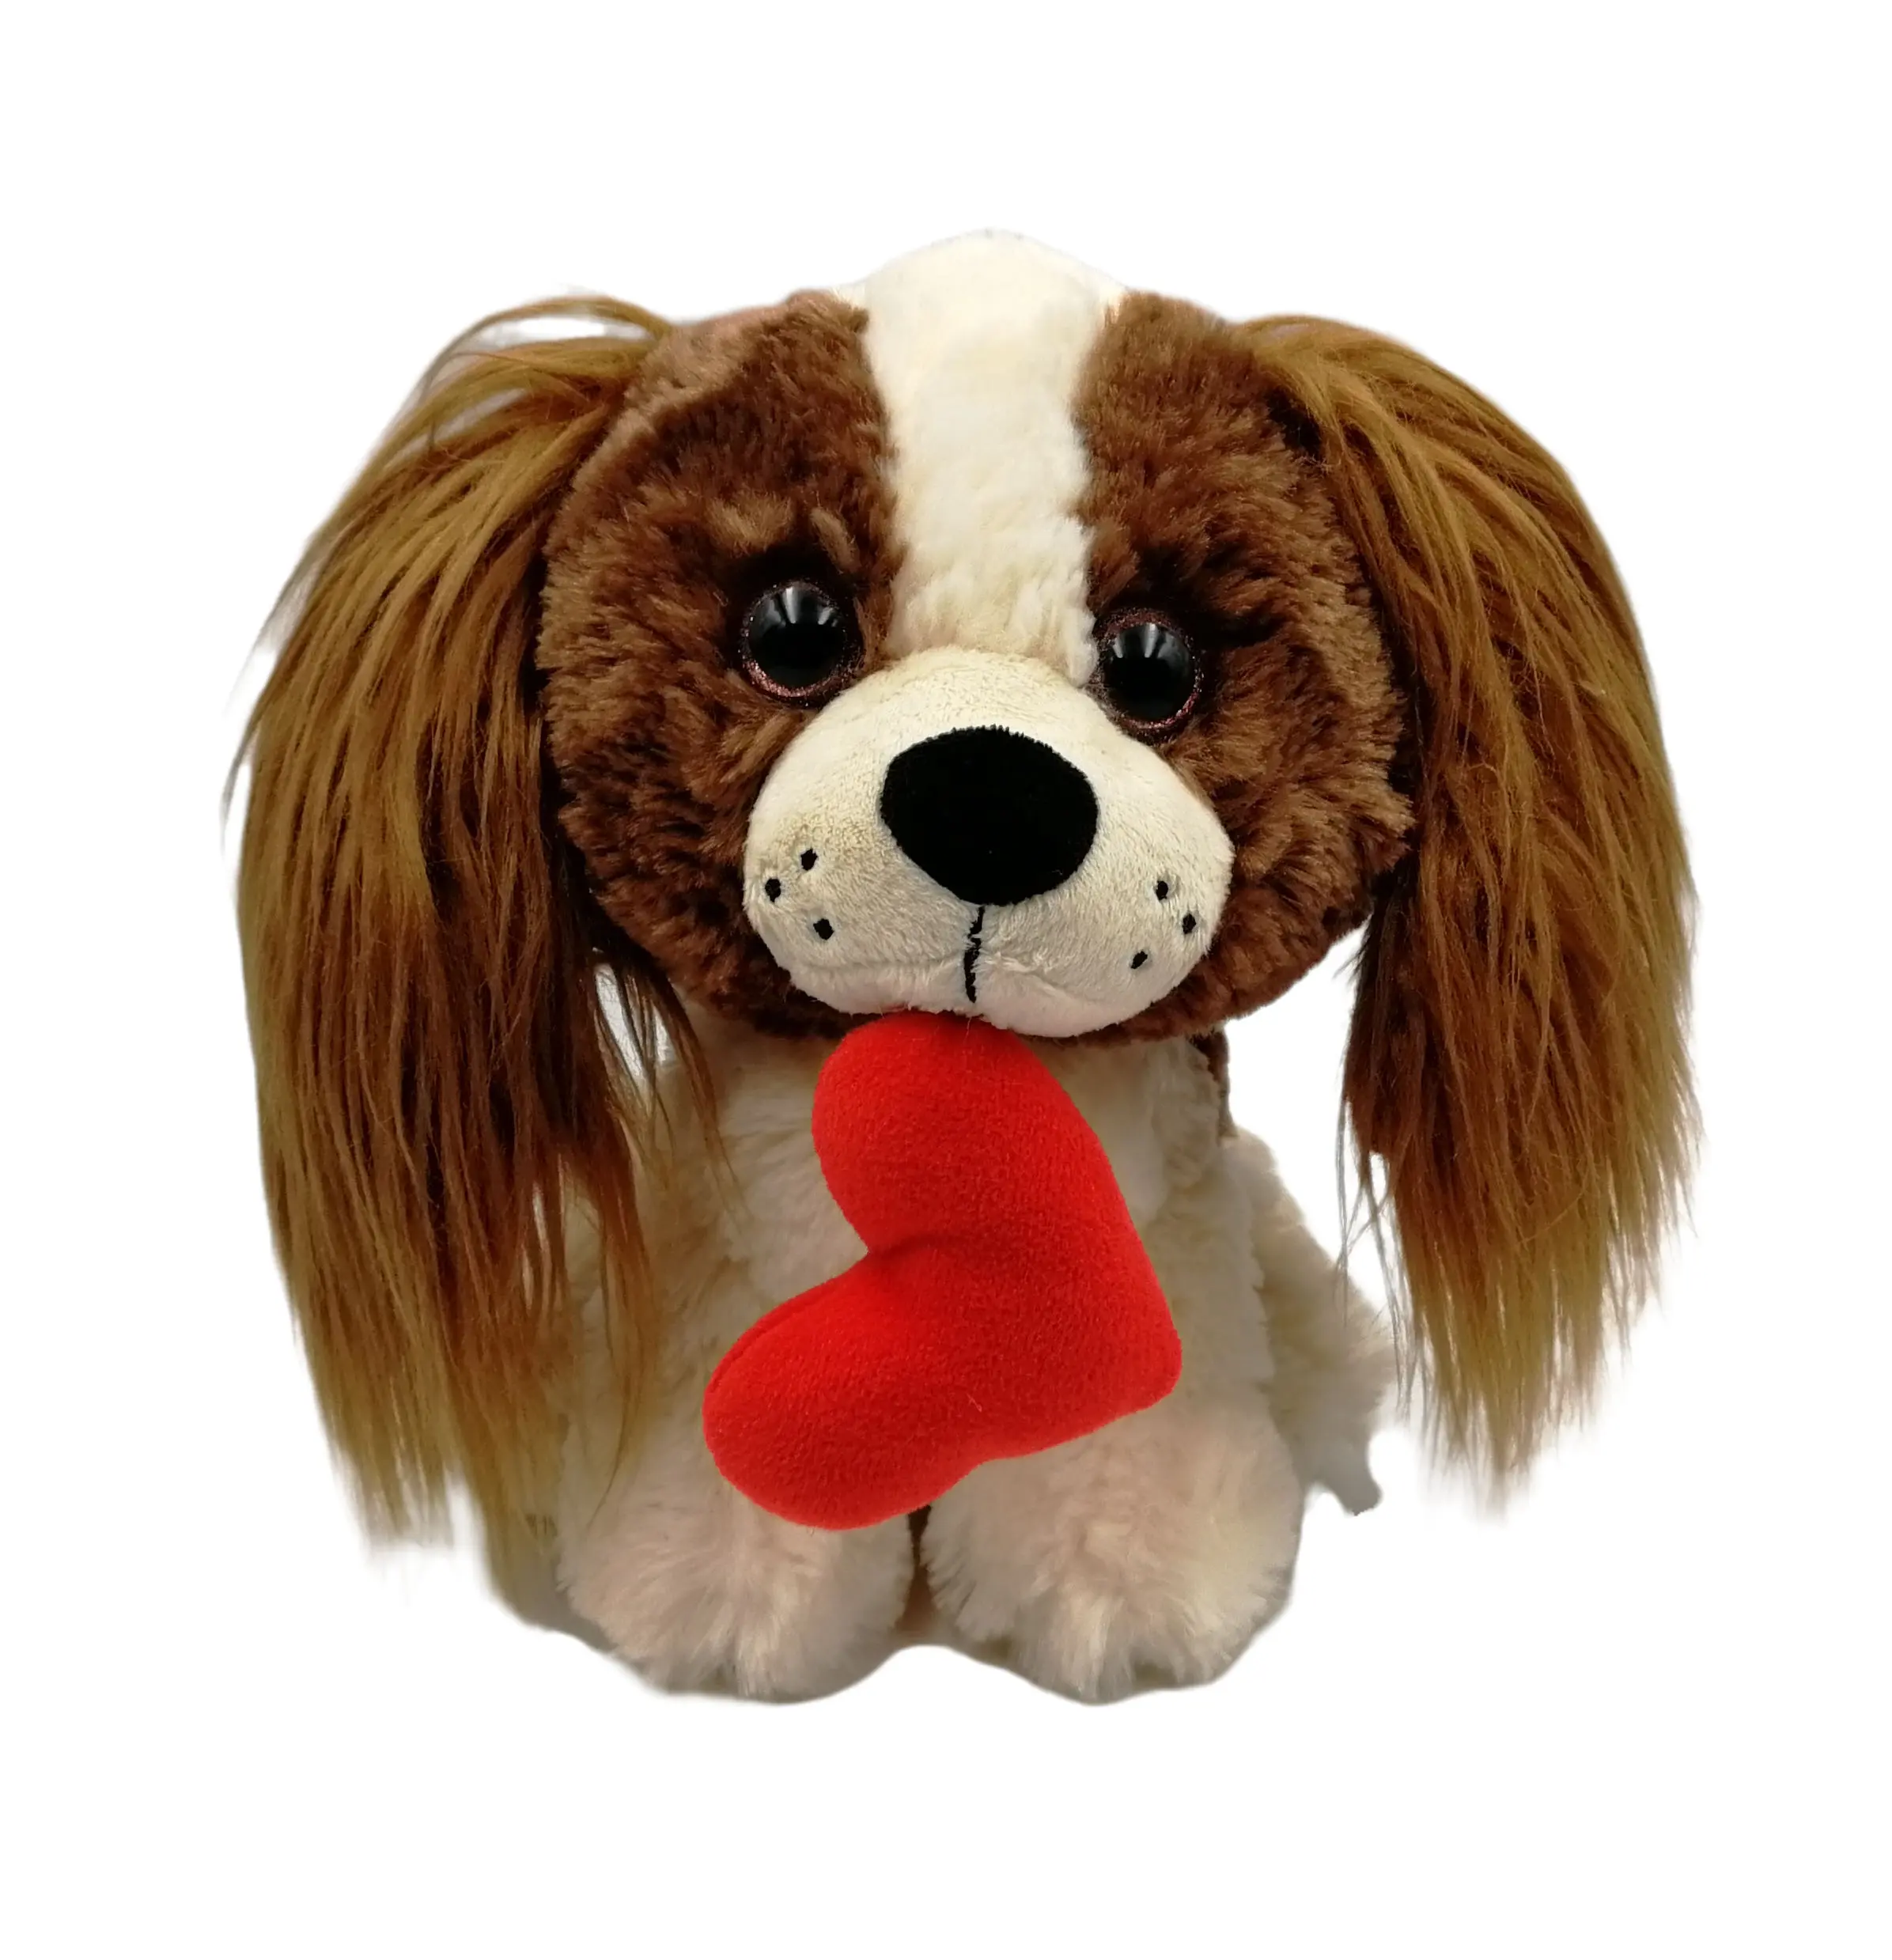 Commercio all'ingrosso personalizzato di alta qualità OEM/ODM 8.5 pollici regalo di san valentino bambini carino morbido cane peluche cuore